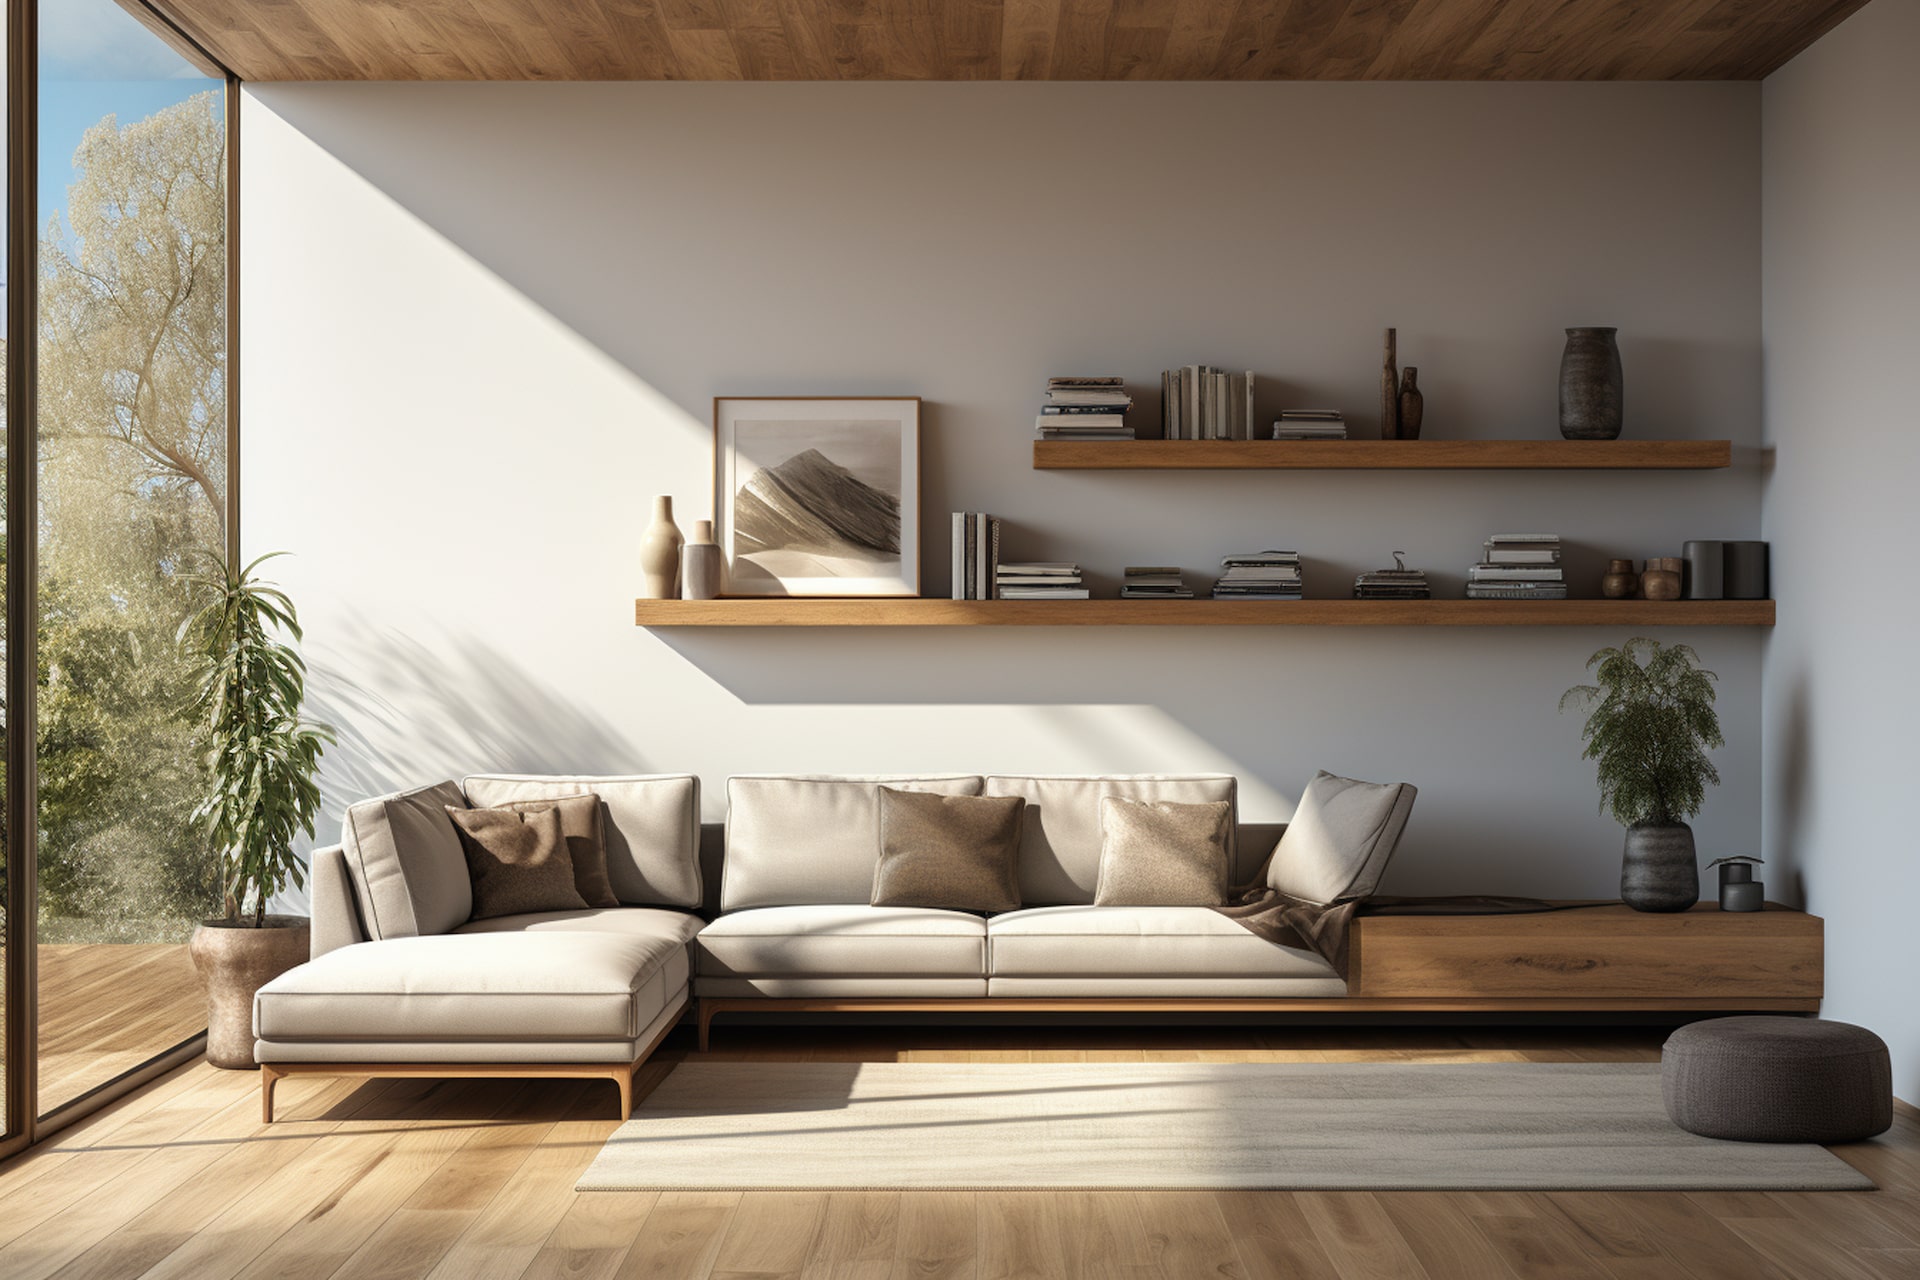 Wooden Living Room Sets: The Subtleties of Natural Elegance